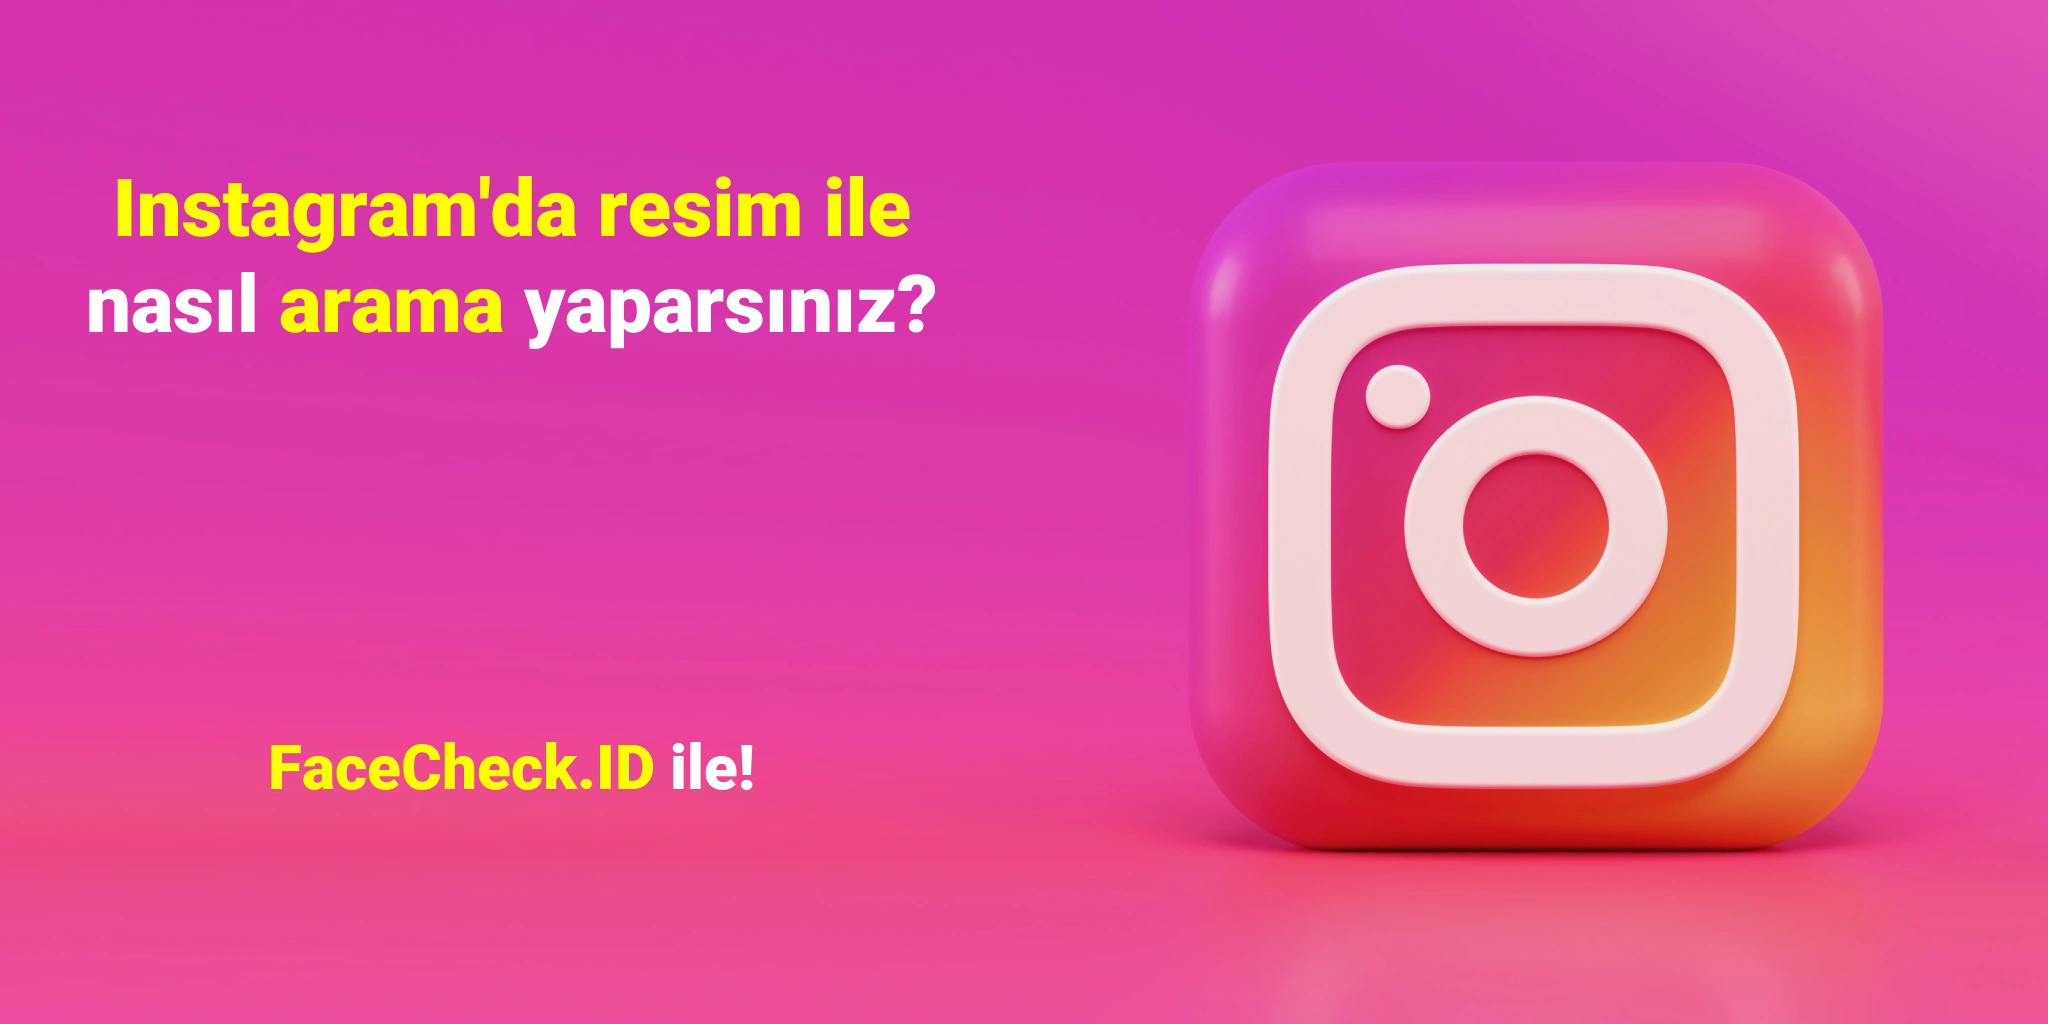 Instagram'da resim ile nasıl arama yaparsınız? FaceCheck.ID ile!